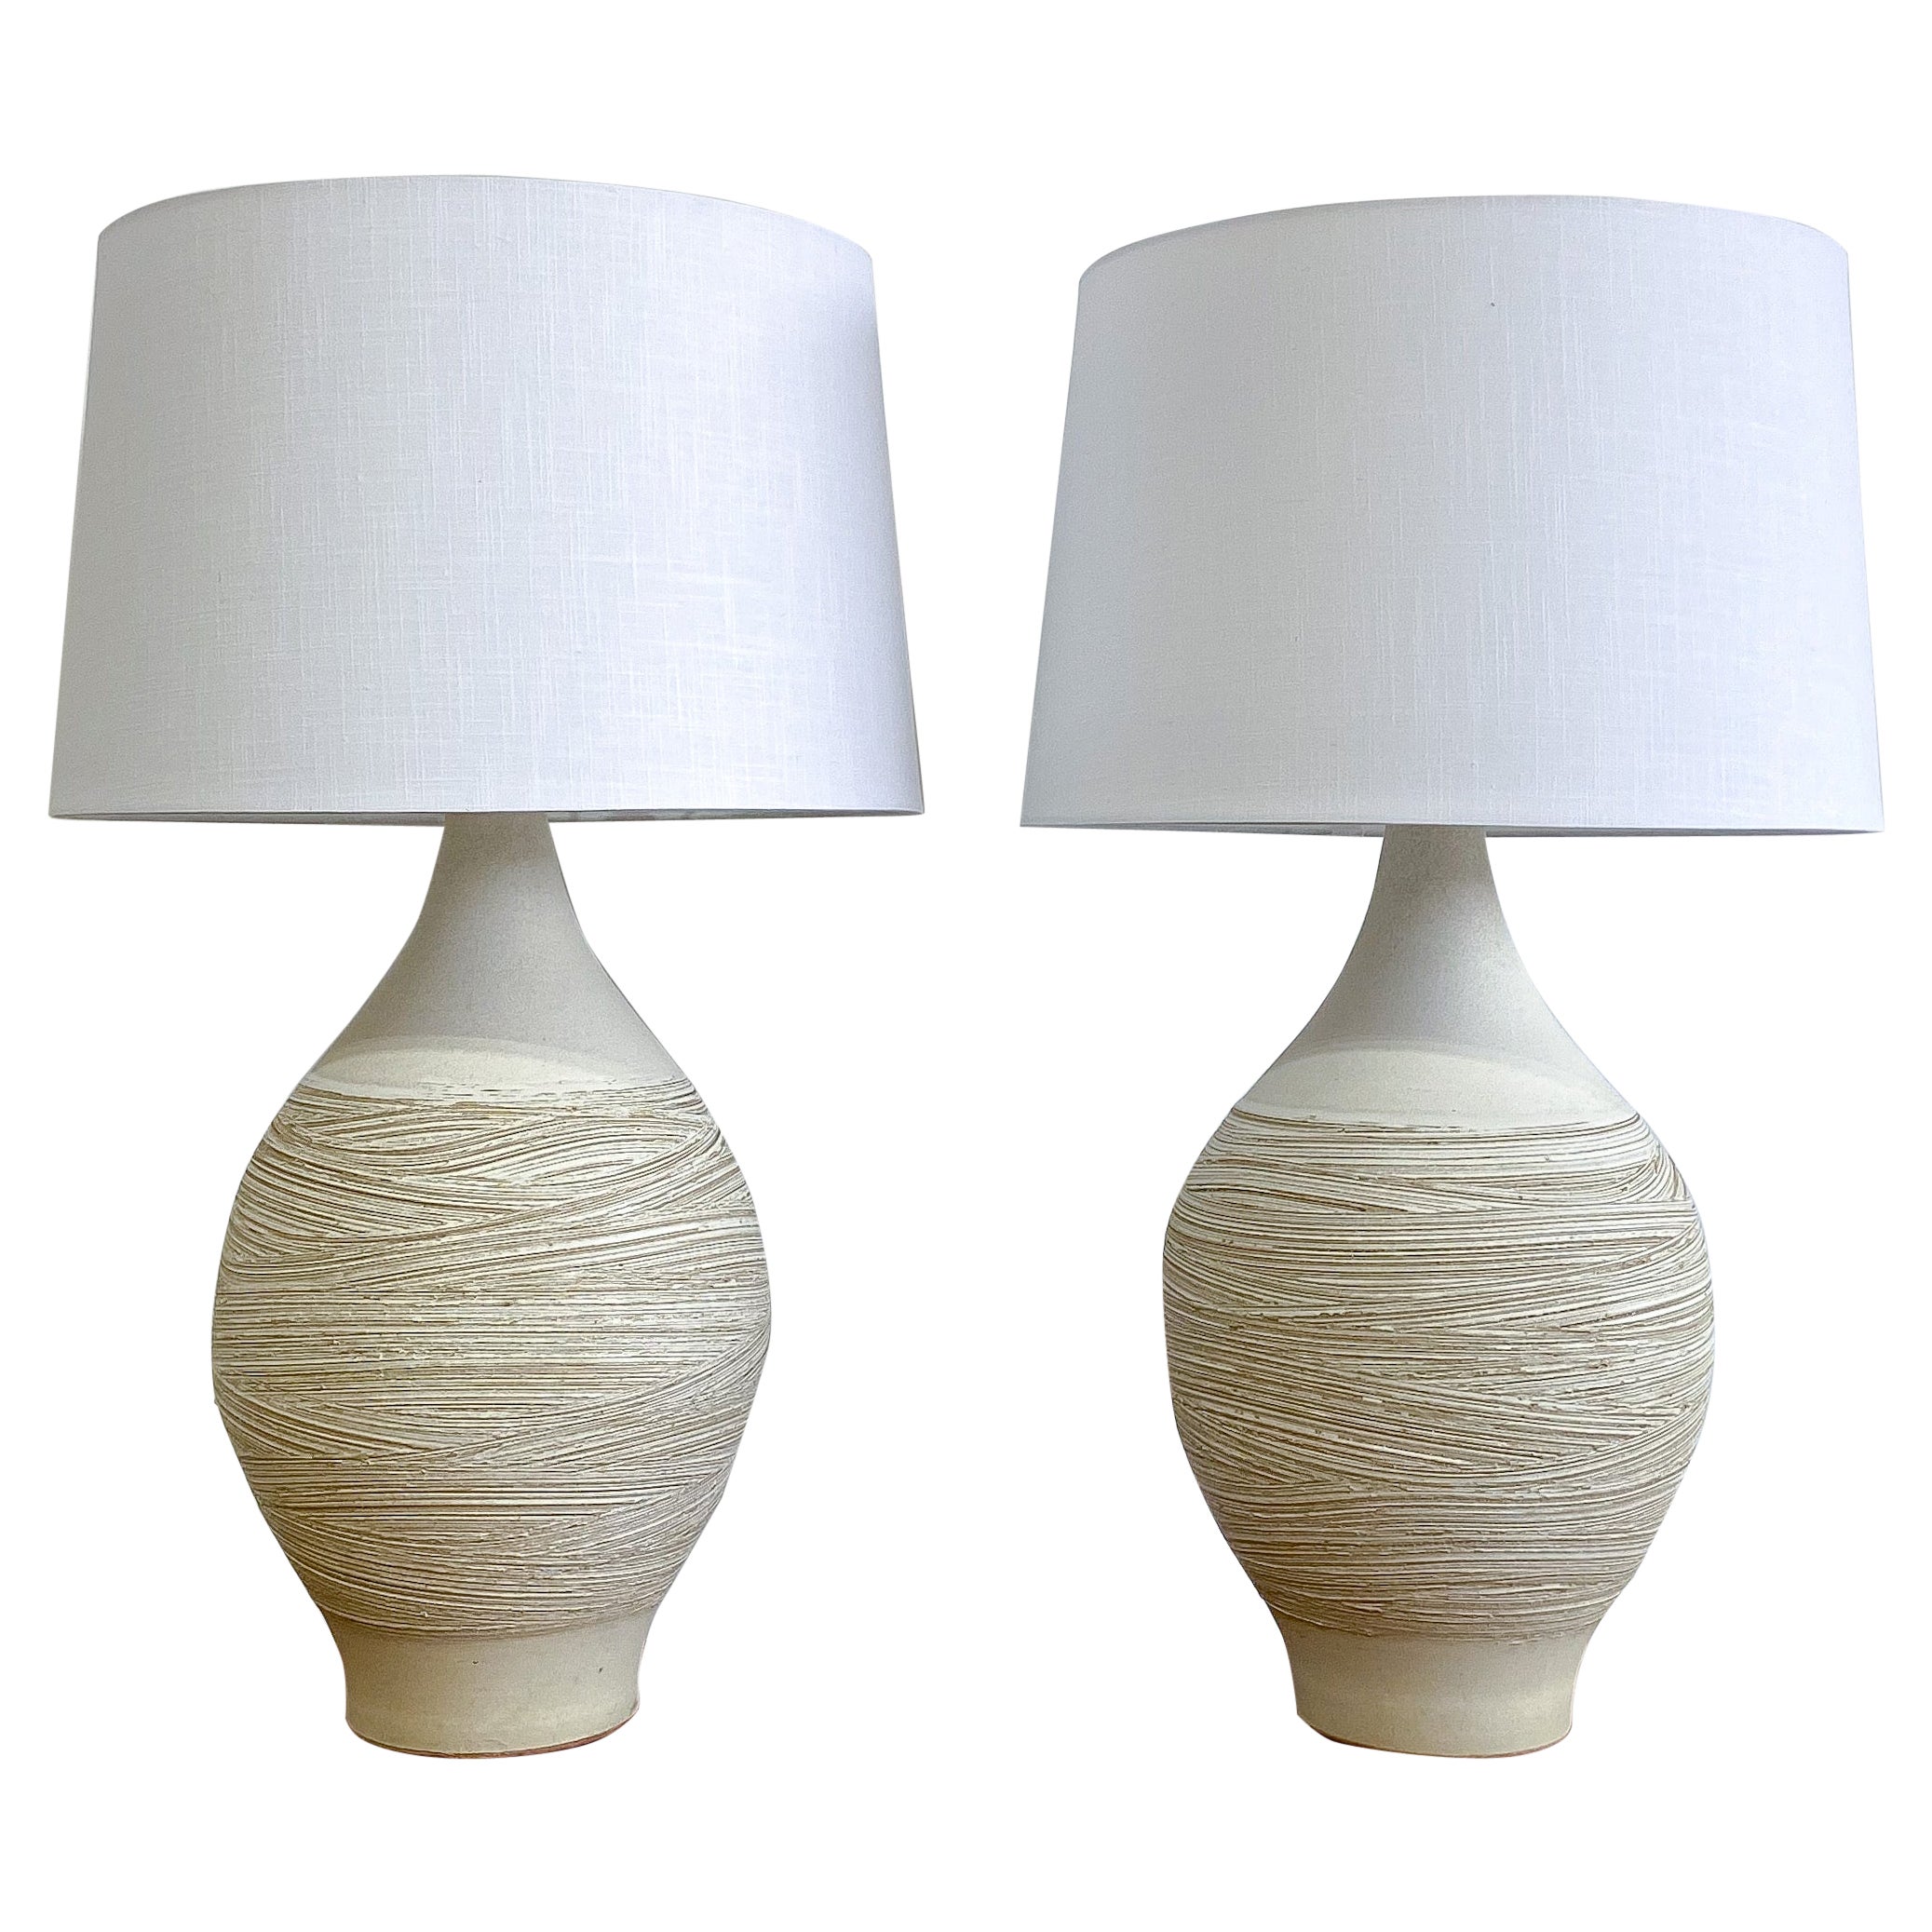 Paar Keramik-Tischlampen von Lee Rosen für Design Technics, 1960er Jahre